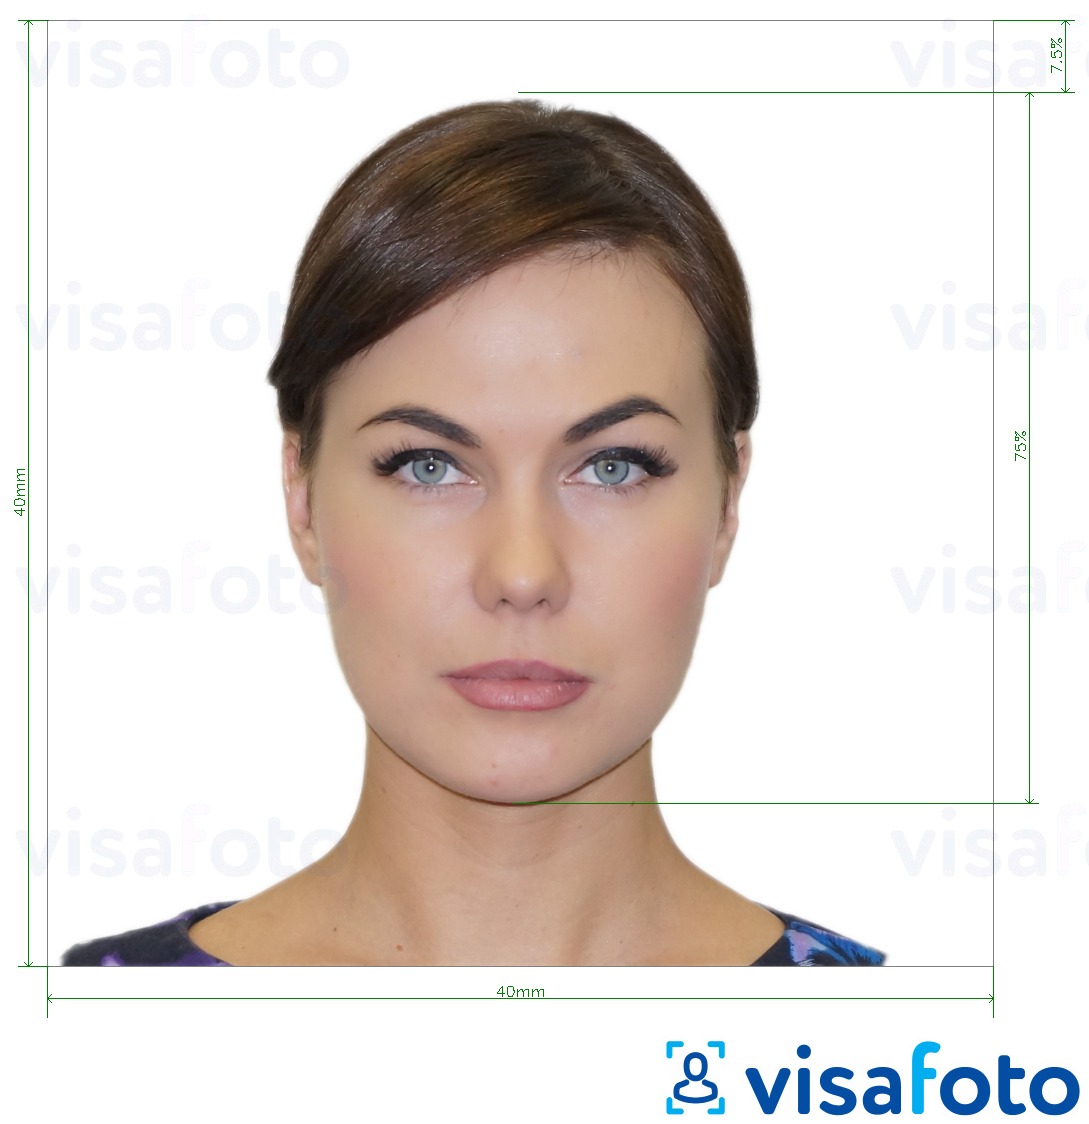 Exemples sur des photos pour Italie Passeport 40x40 mm (LA consulat) 4x4 cm avec les spécifications de taille exactes